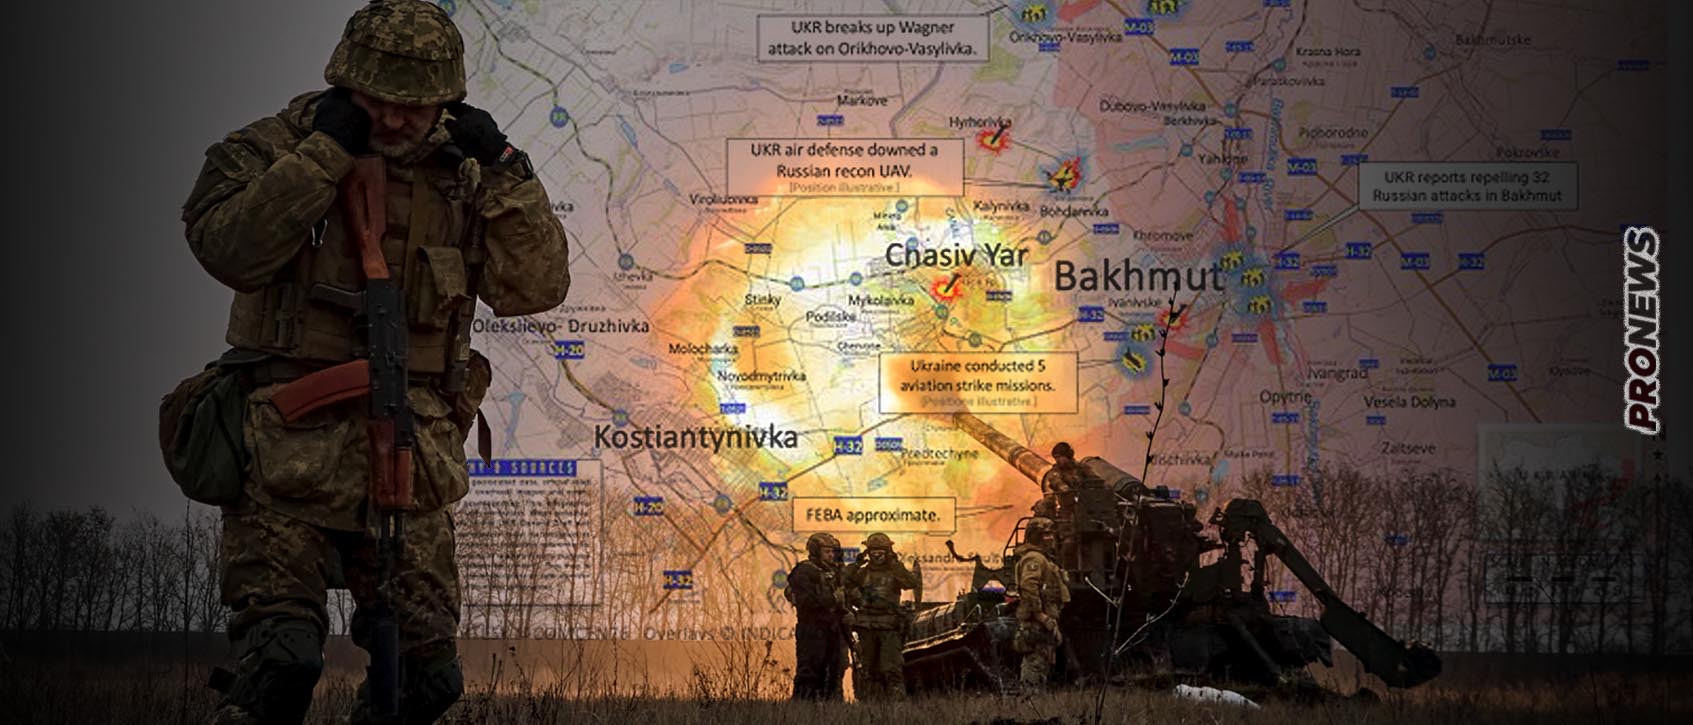 Οι Ρώσοι κατέλαβαν το ανατολικό Κρόμοβο και «έκοψαν» στα δύο τους Ουκρανούς στο δυτικό Μπάκχμουτ